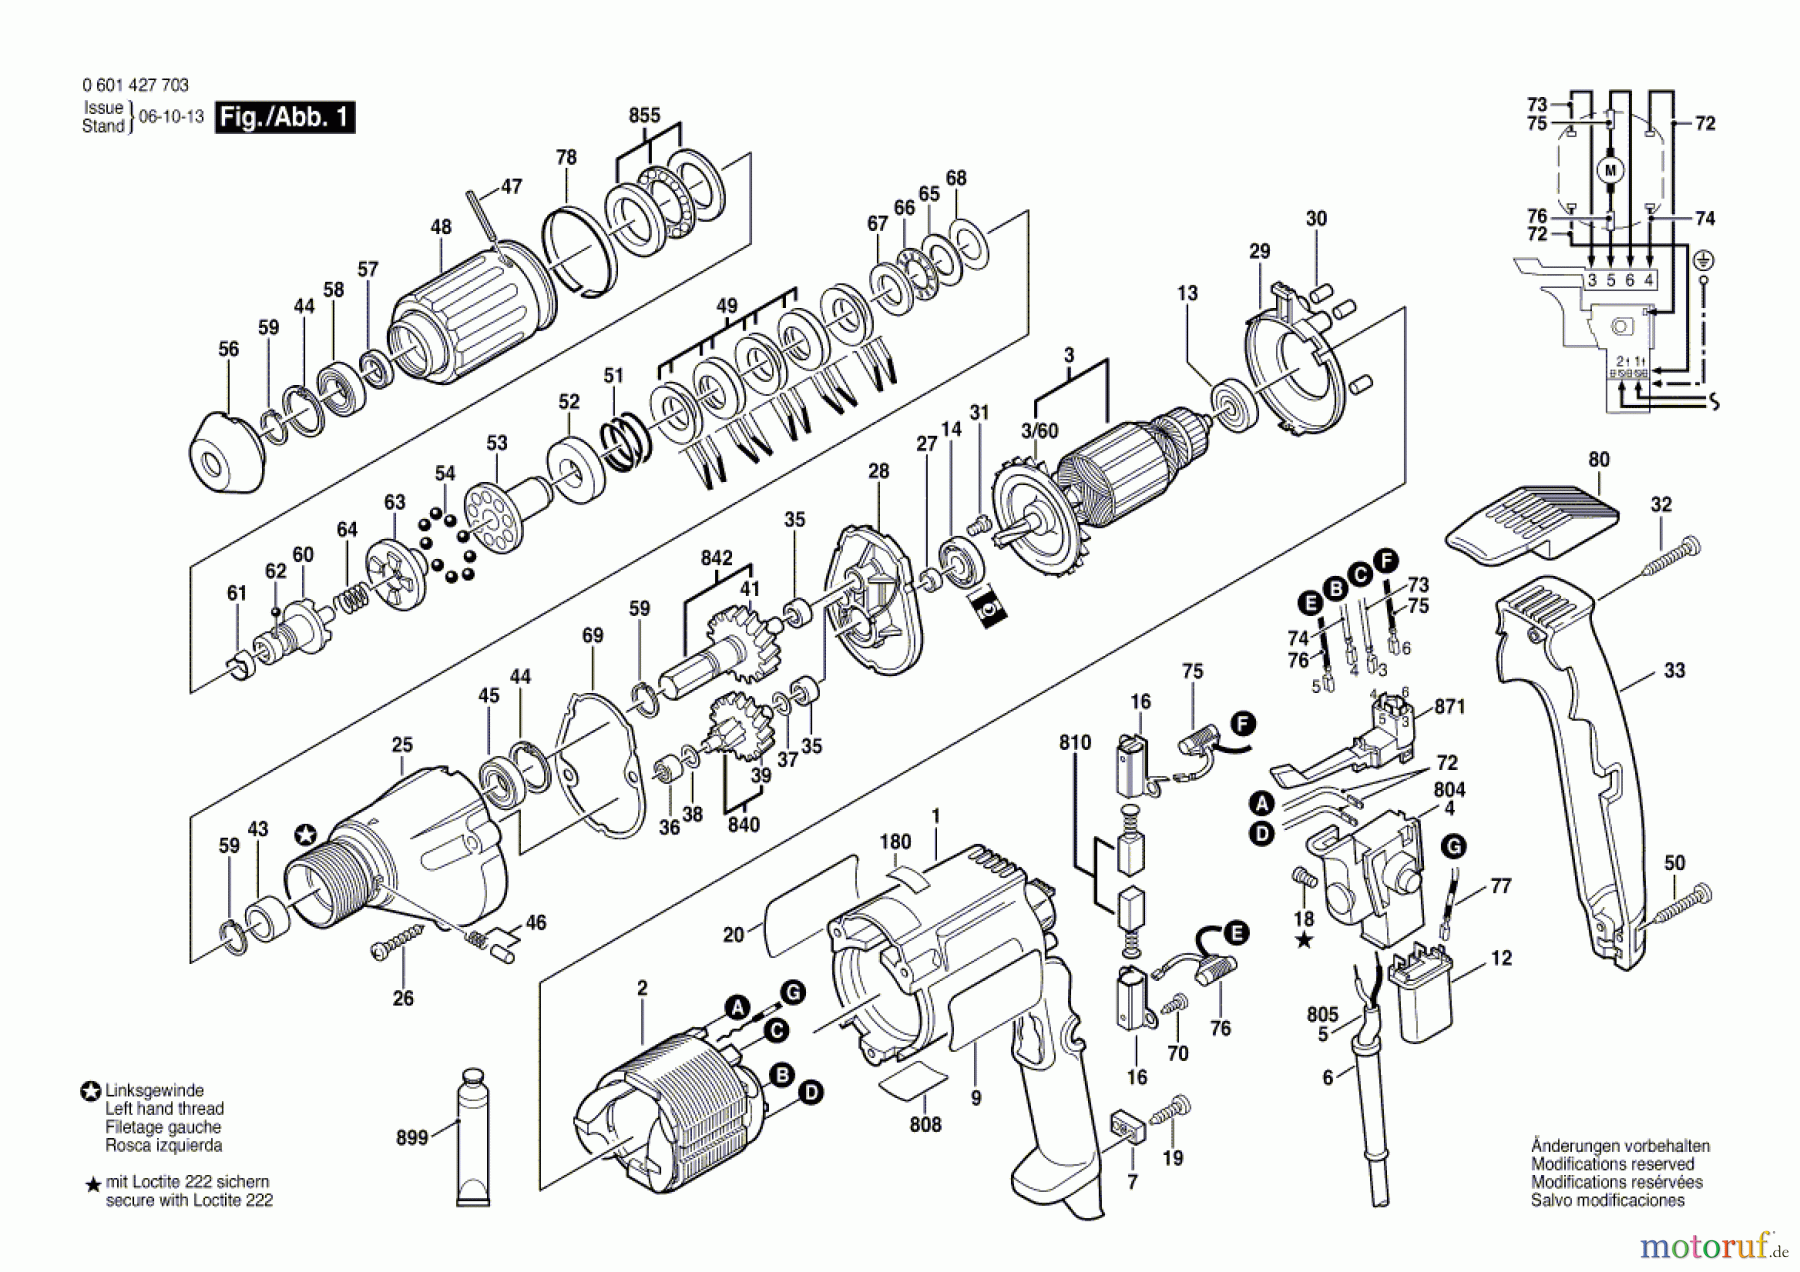  Bosch Werkzeug Schrauber GSR 8-16 KE Seite 1